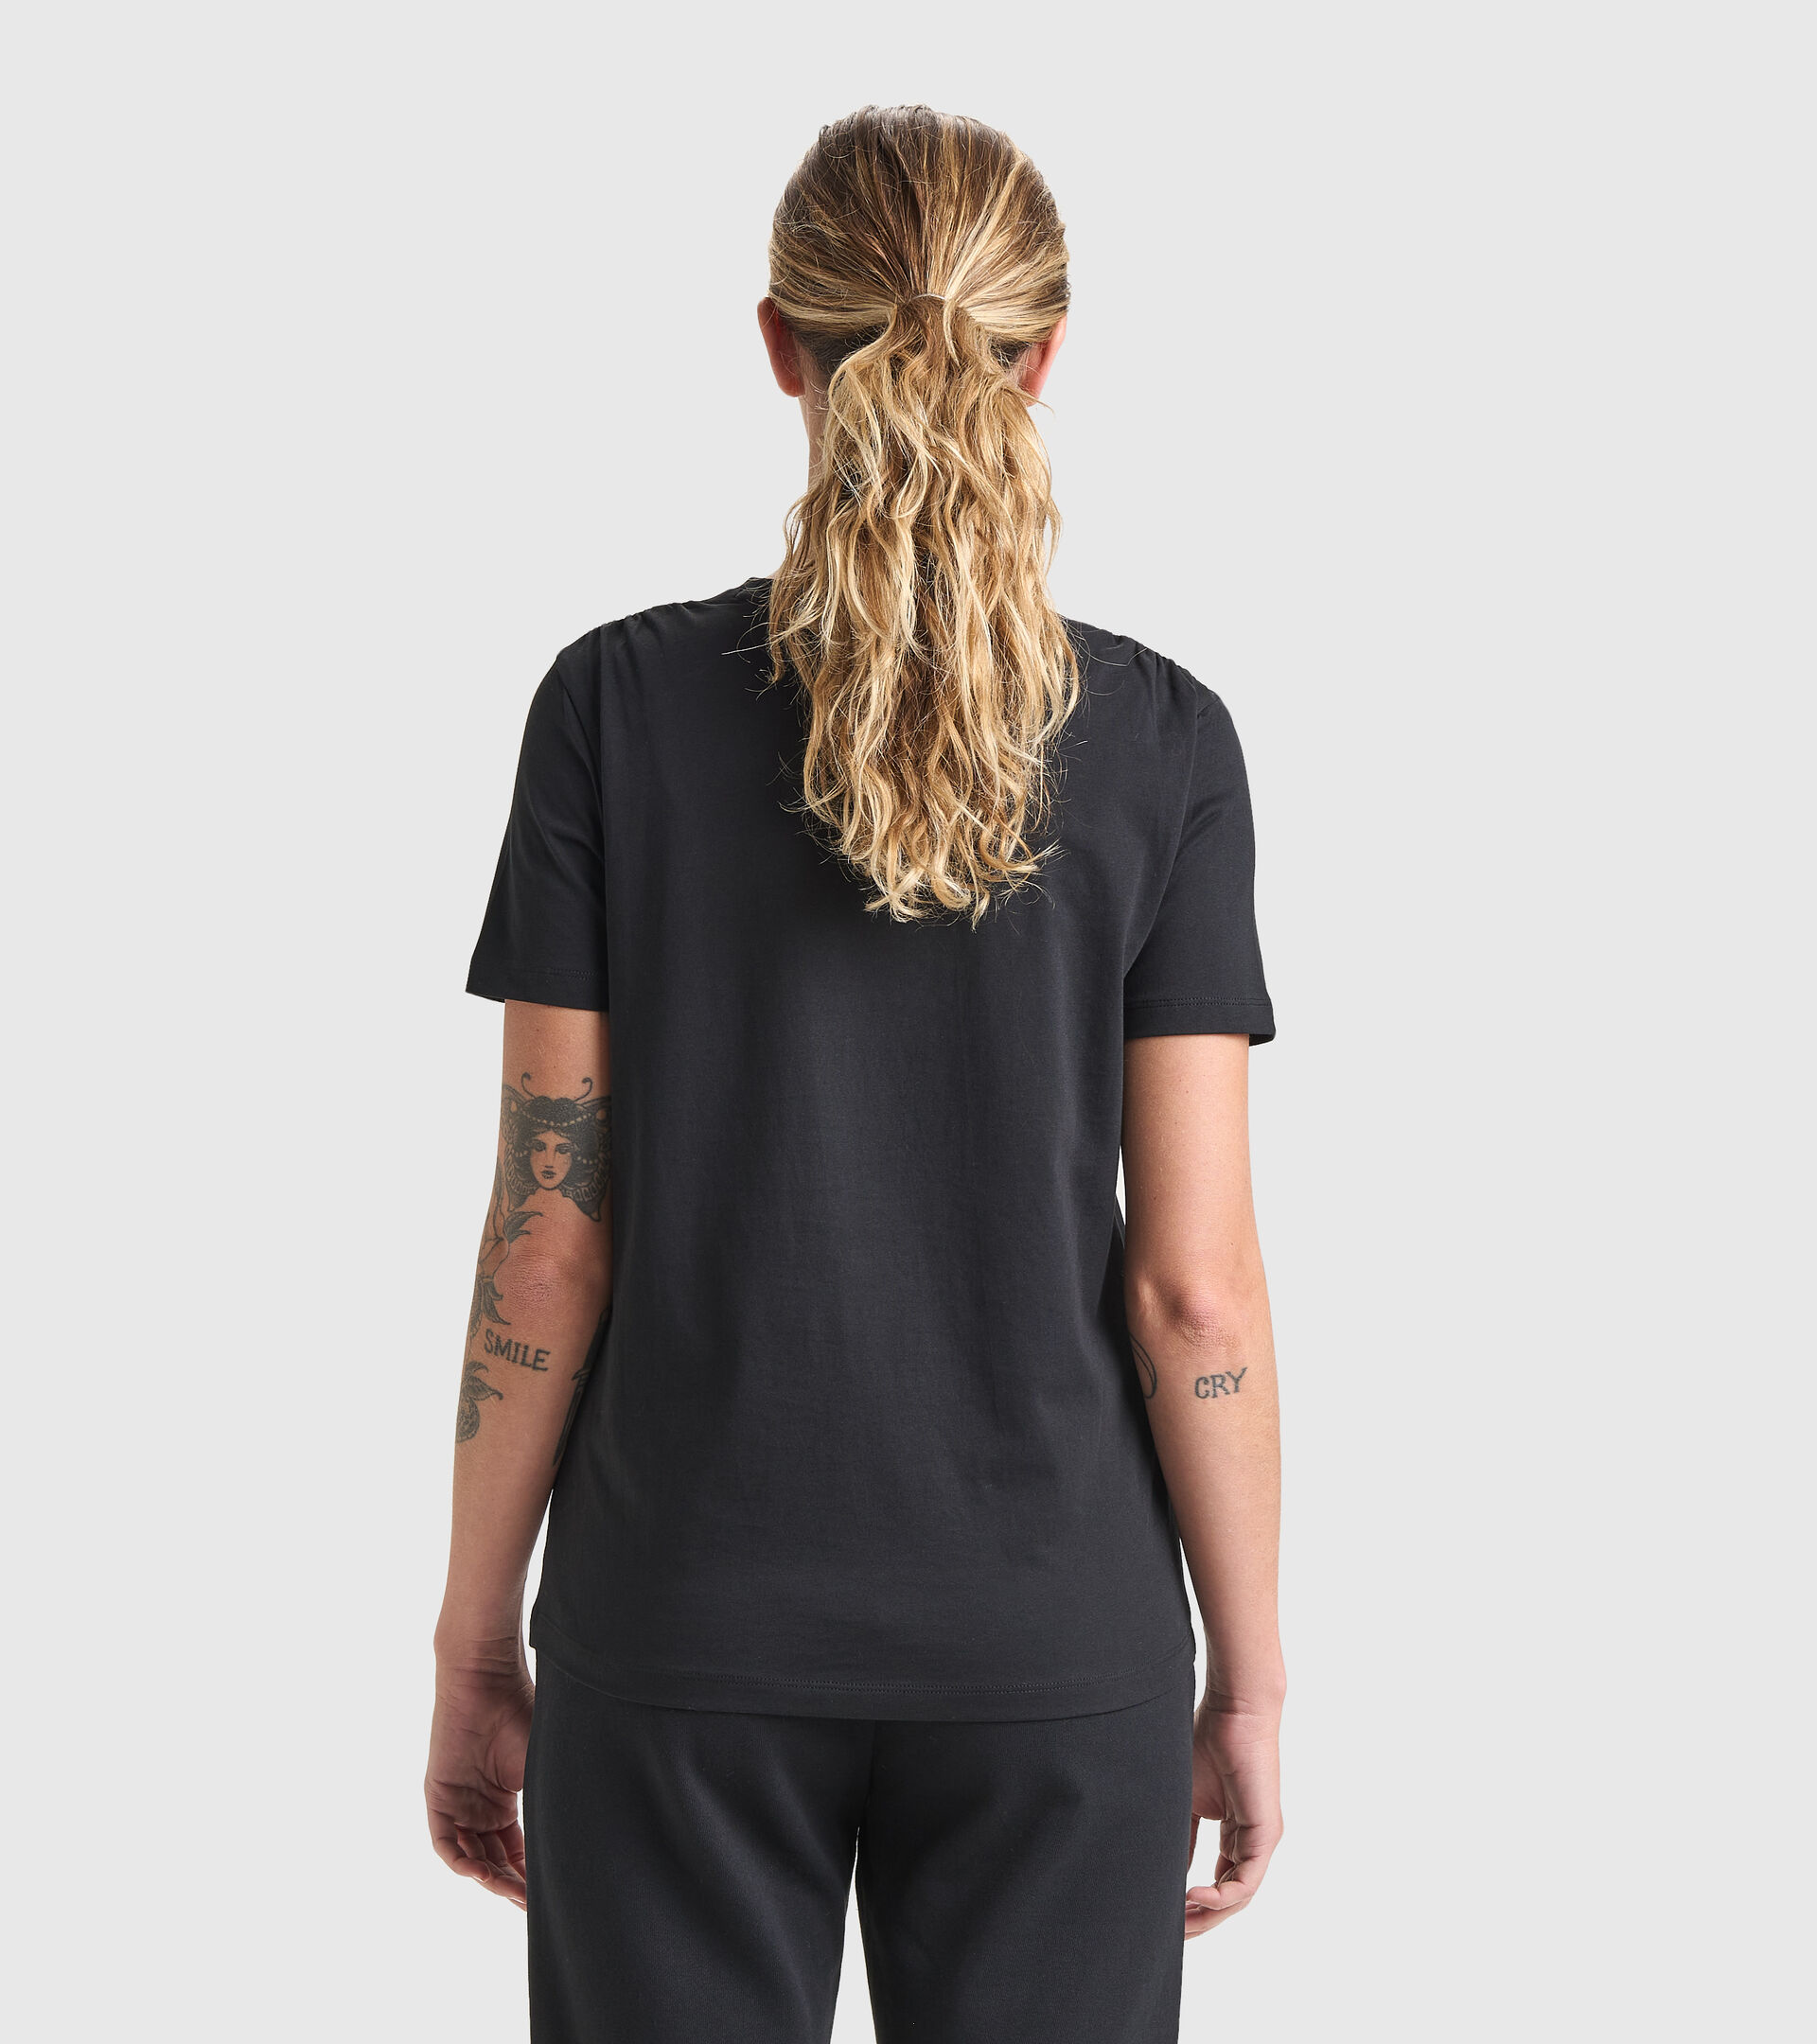 Sports T-shirt - Women L.T-SHIRT SS FLOUNCE BLACK - Diadora